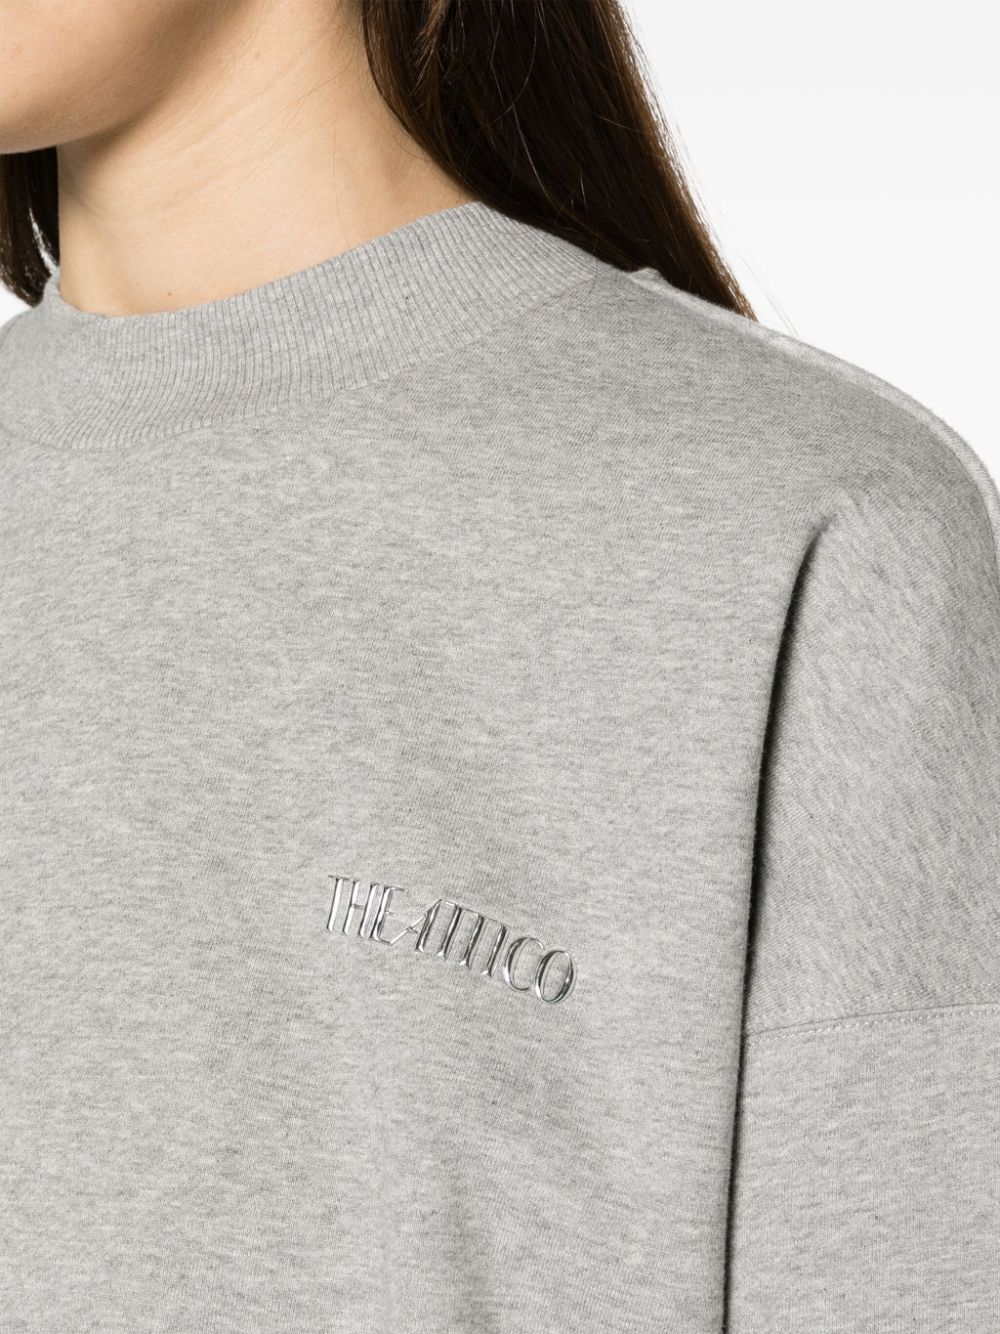 The Attico Sweaters Grey